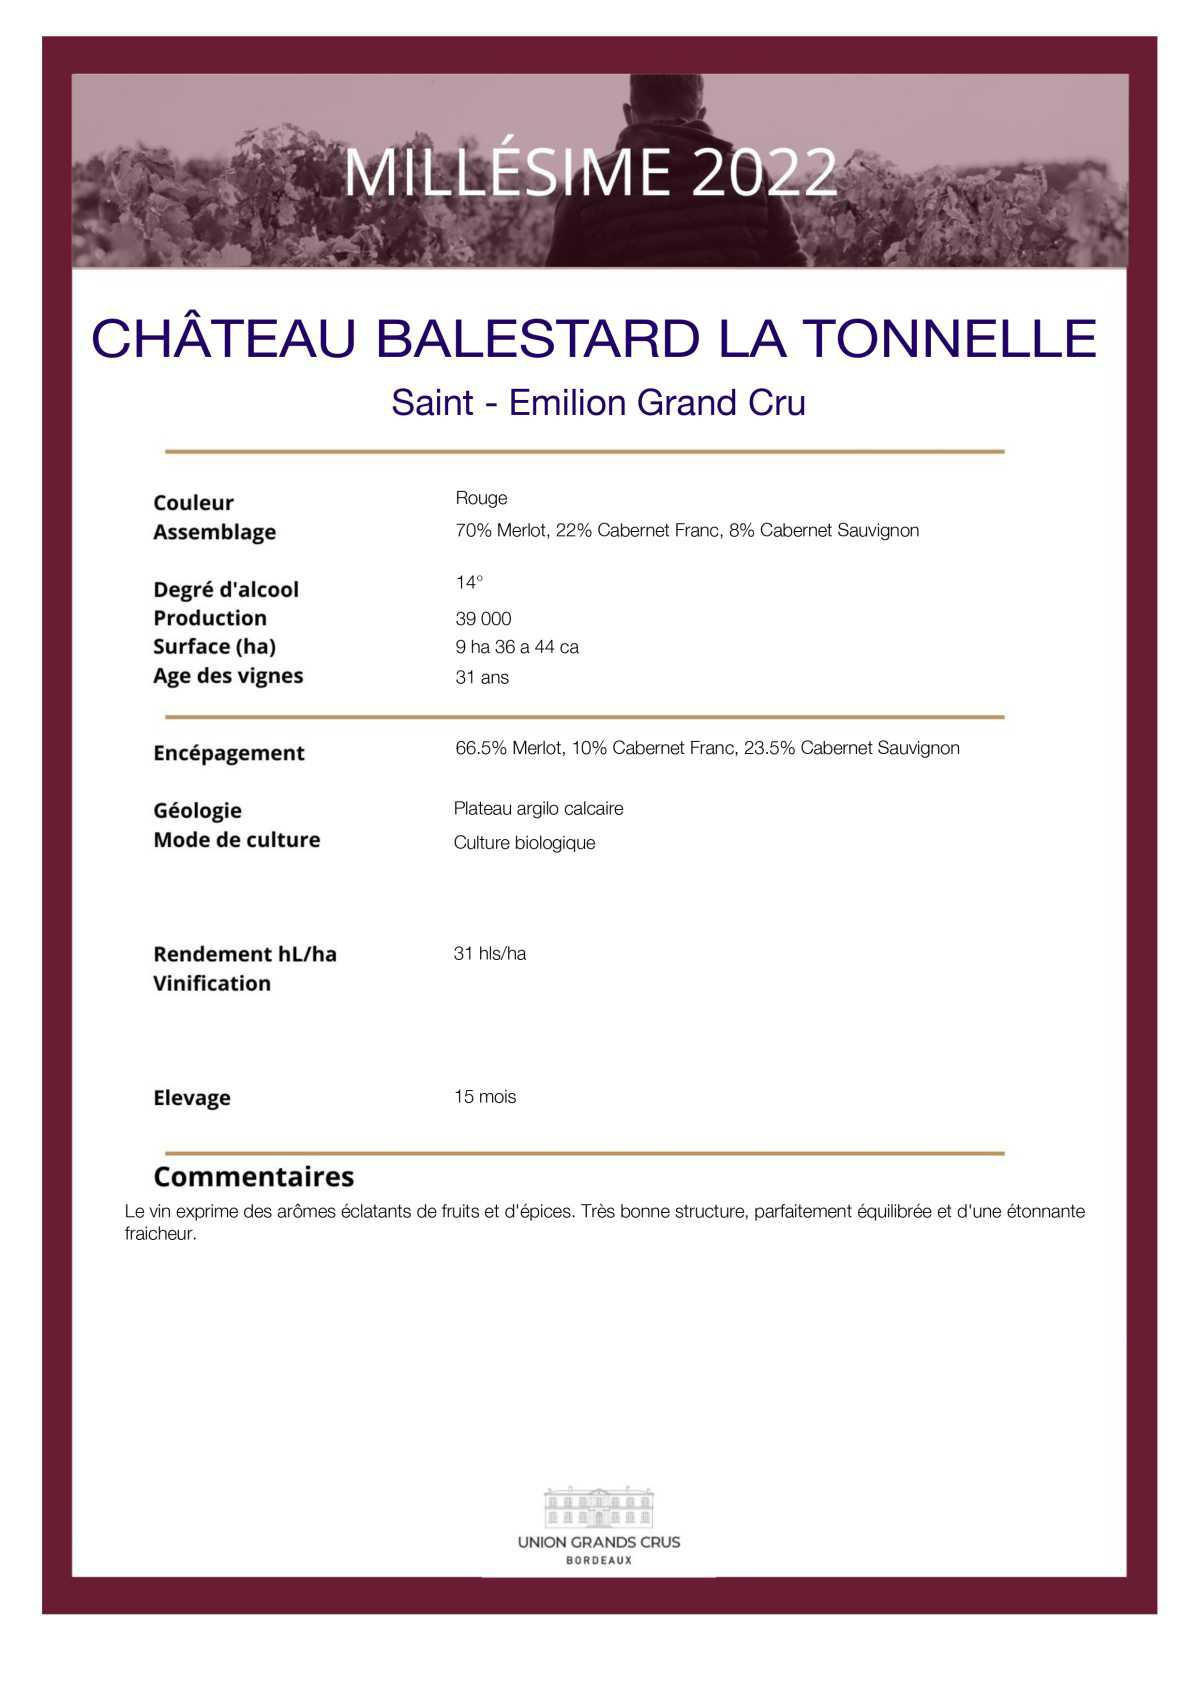 Château Balestard La Tonnelle